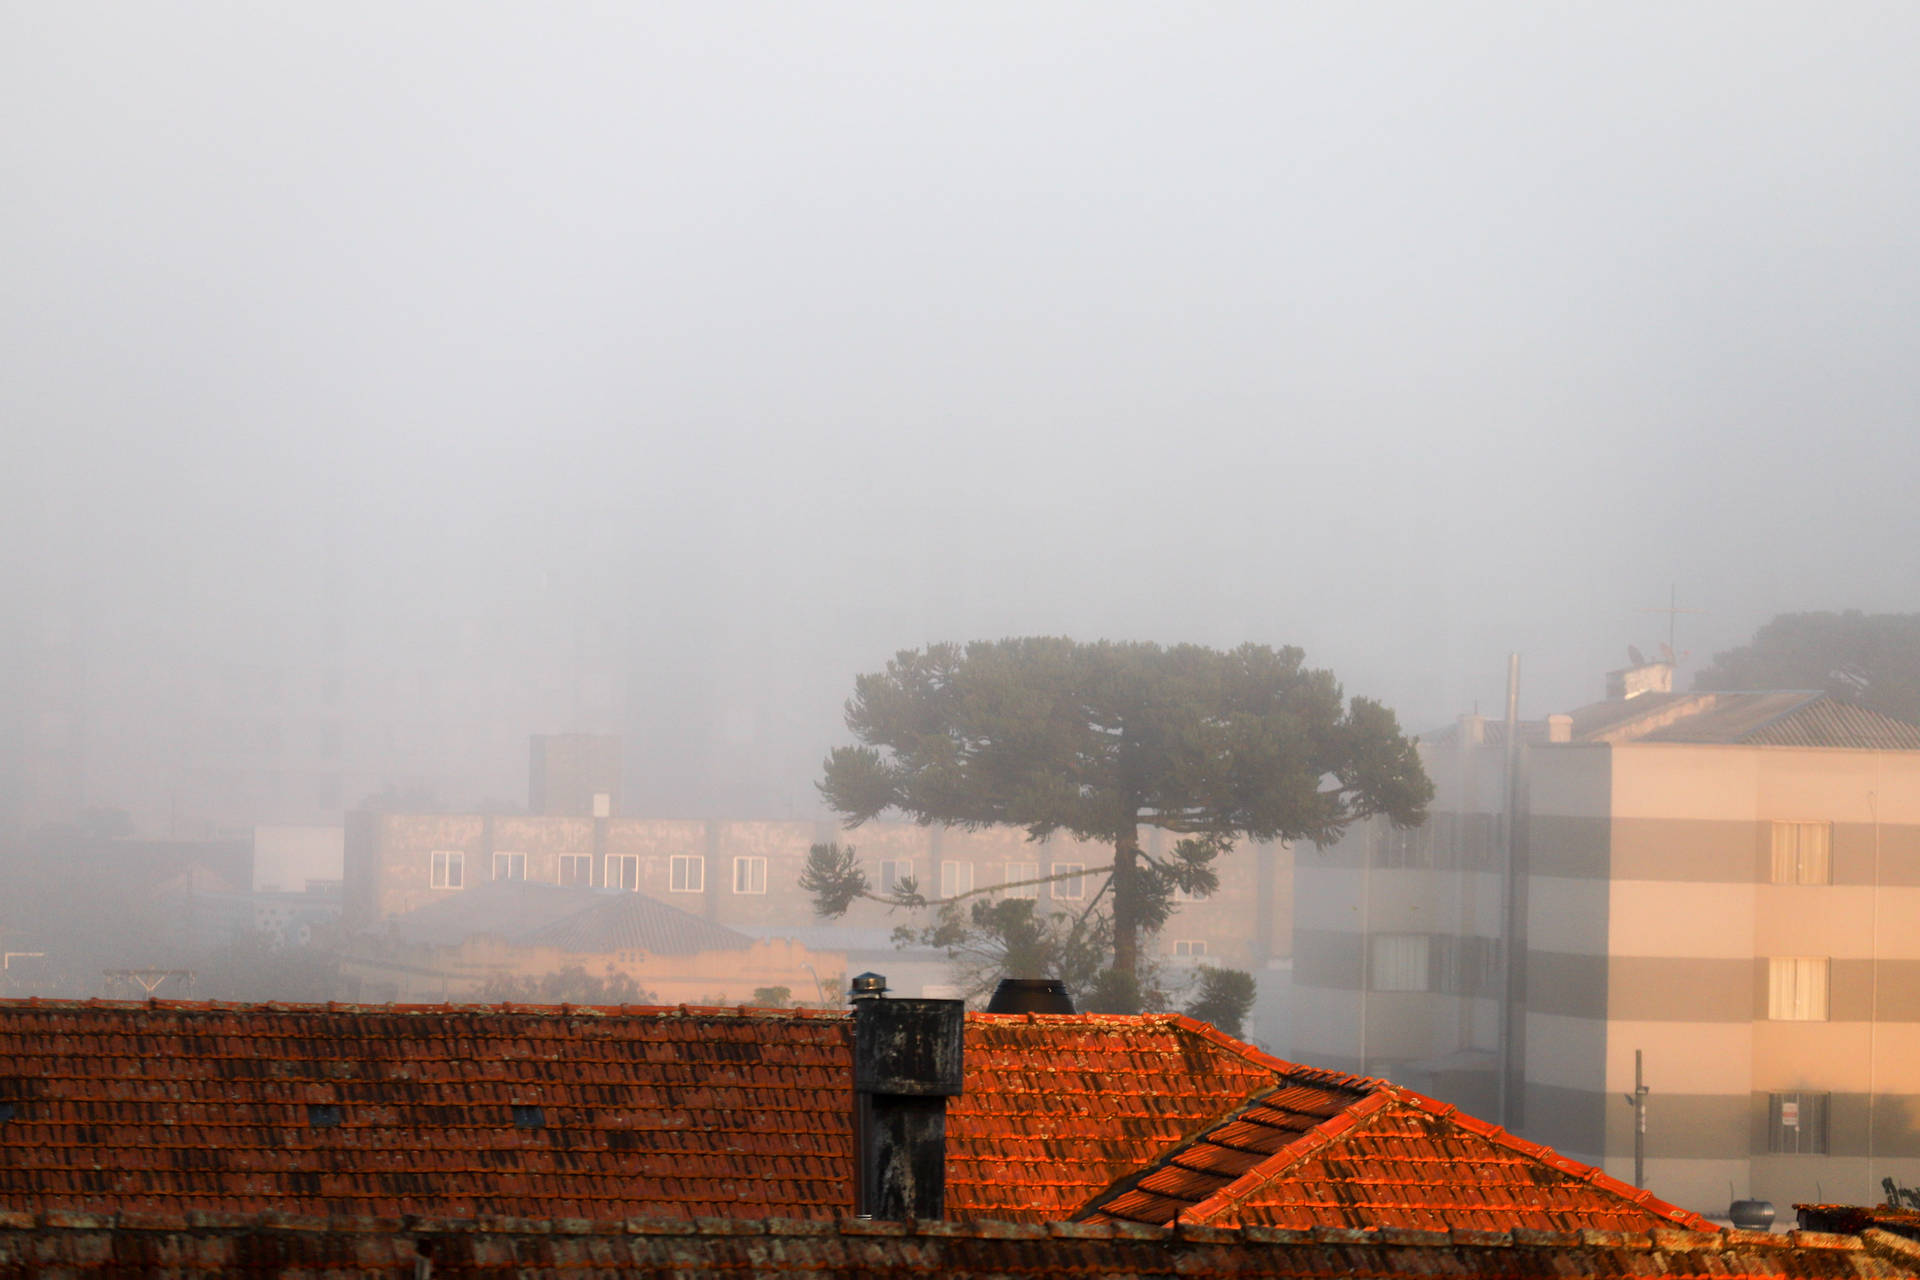  Amanhecer é marcado por neblina intensa em Curitiba